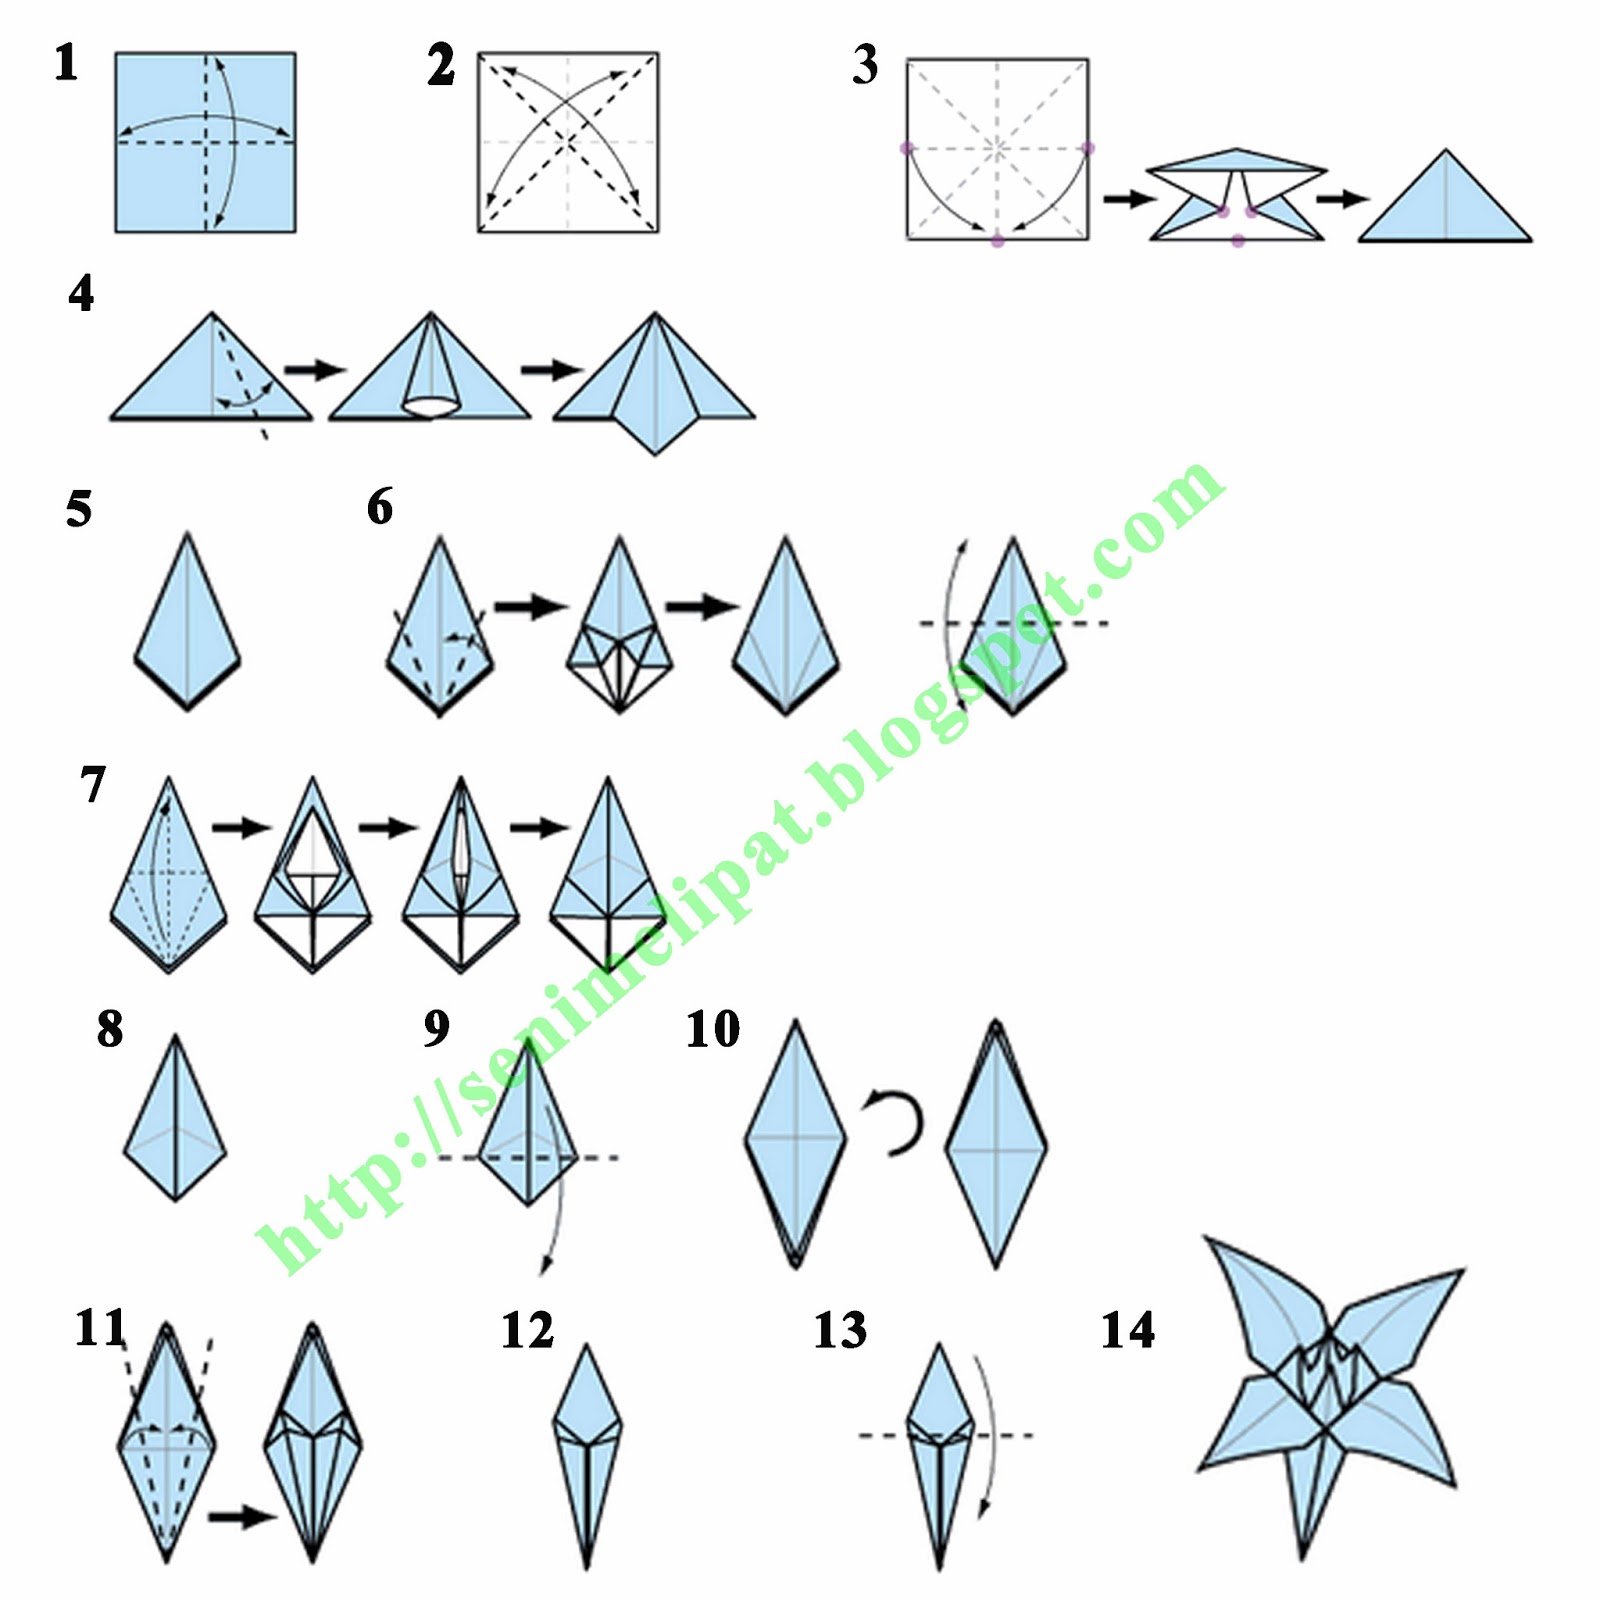  Gambar  Manfaatkan Kertas Warna Origami  Bekas Membuat 